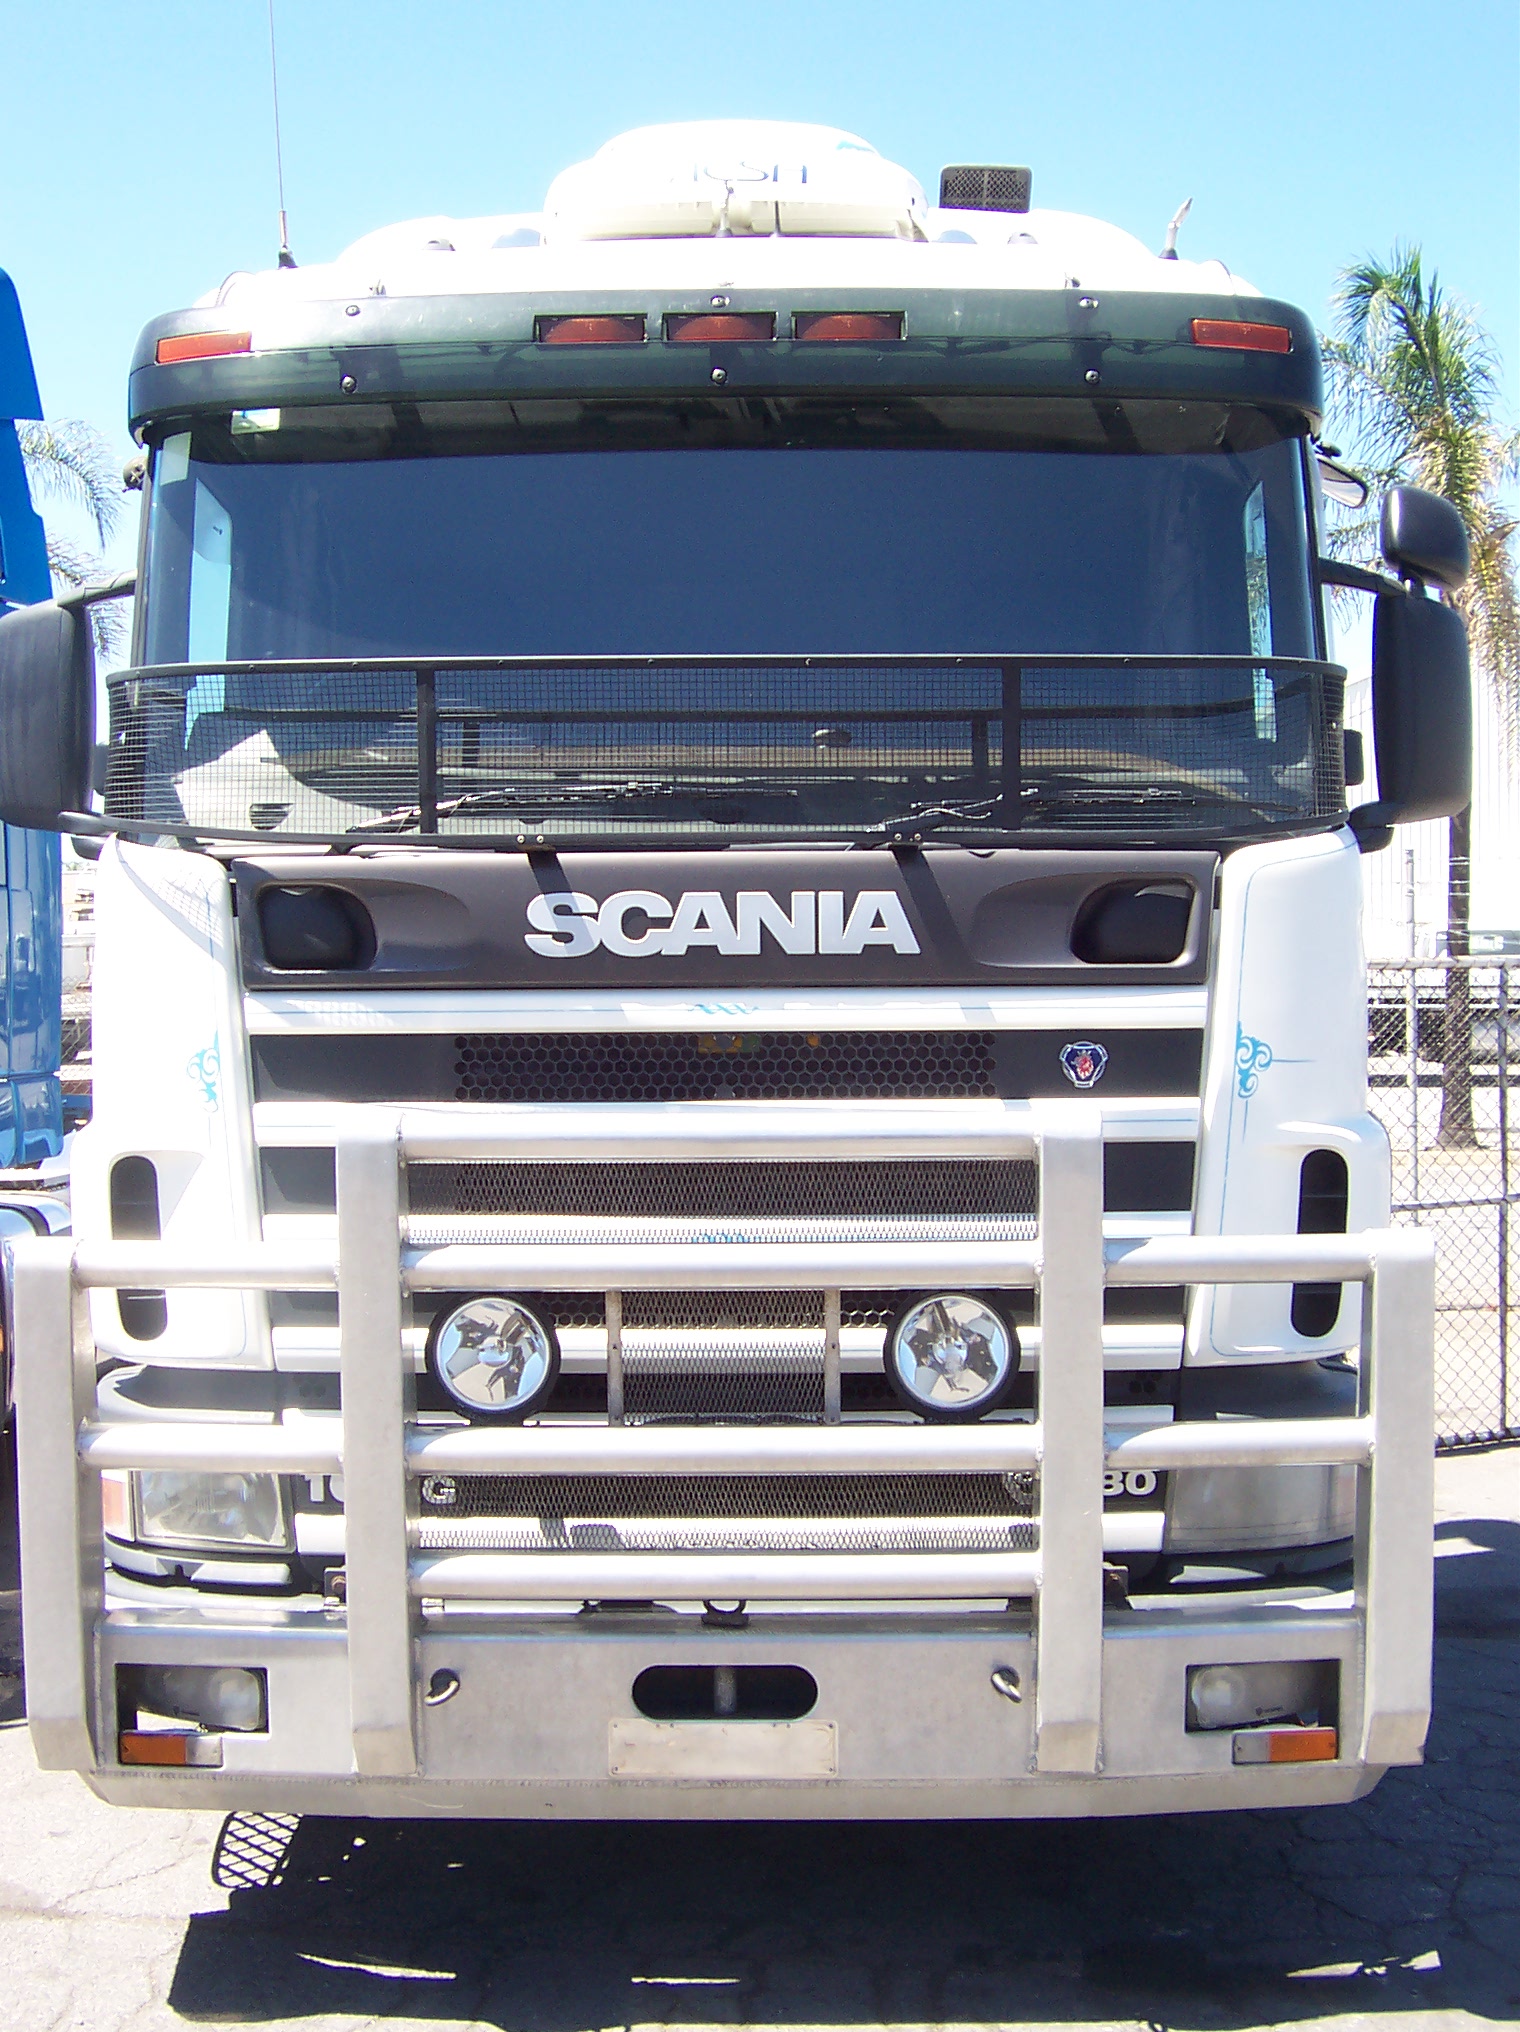 File:Scania V8 prime mover.jpg - Wikimedia Commons